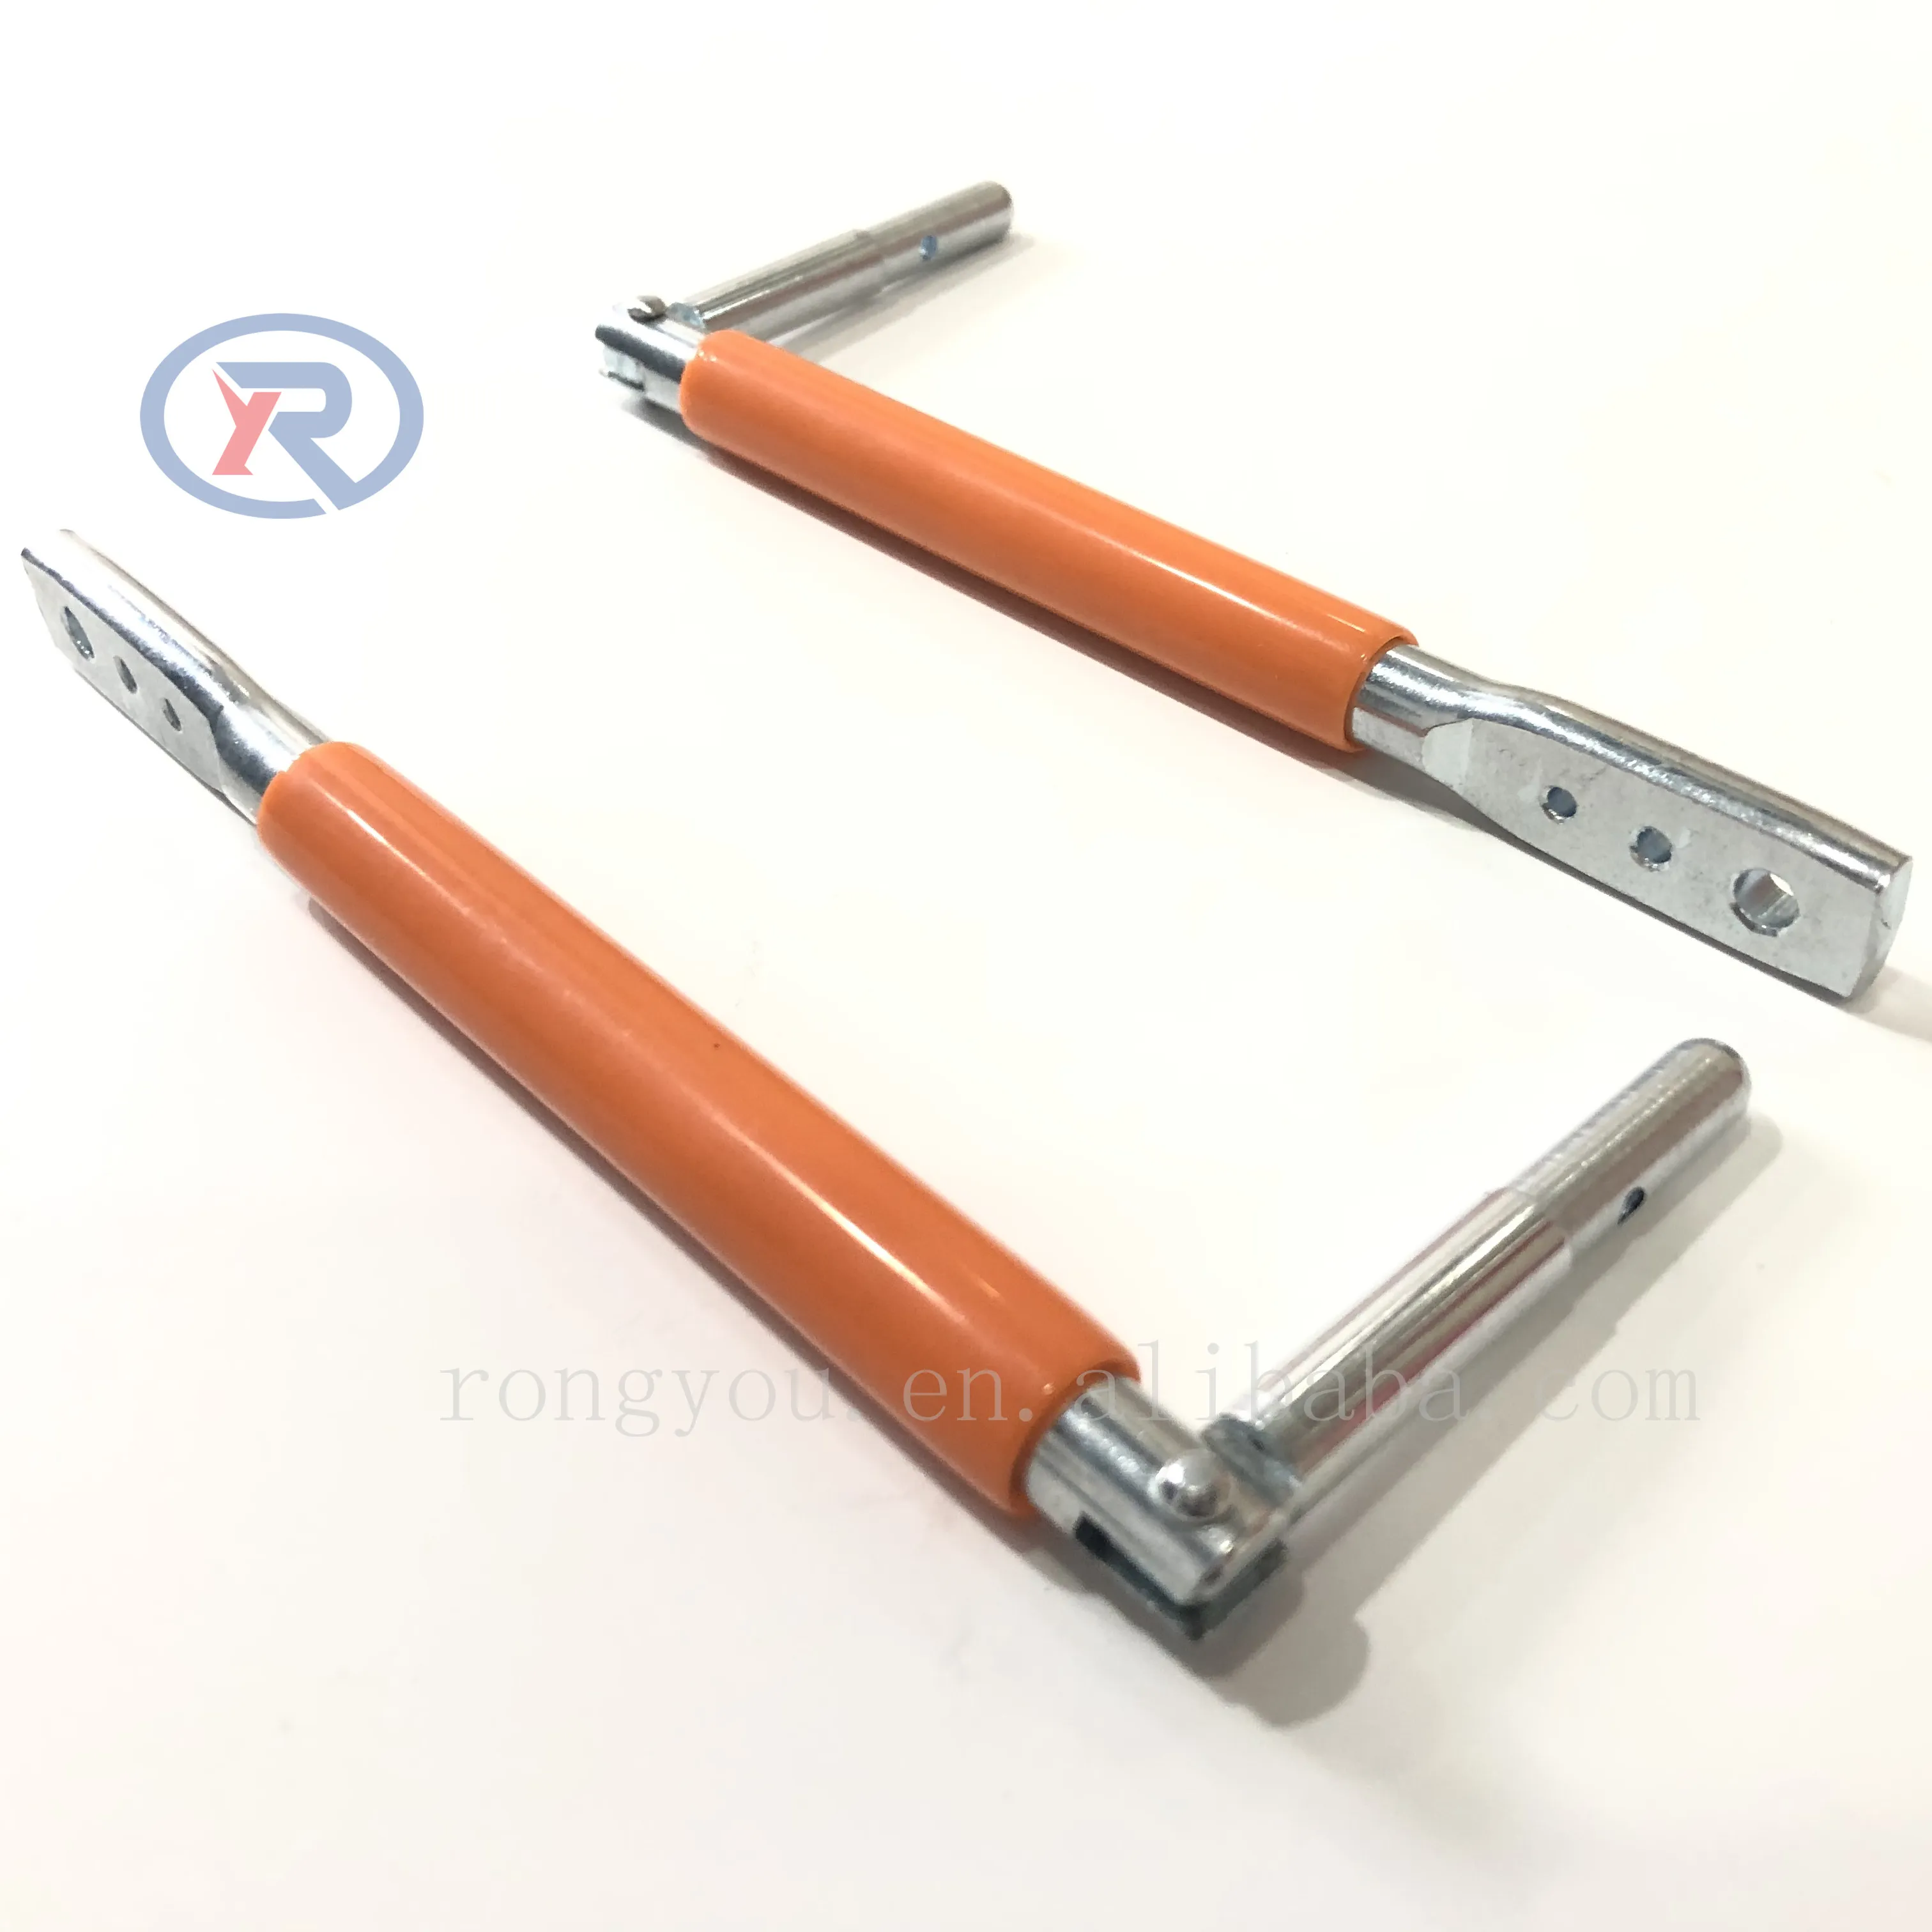 Clip Bender-Ideales Werkzeug zur Sicherung von T-Pfosten-Zaun clips/Draht-Twister zur Befestigung des Zauns